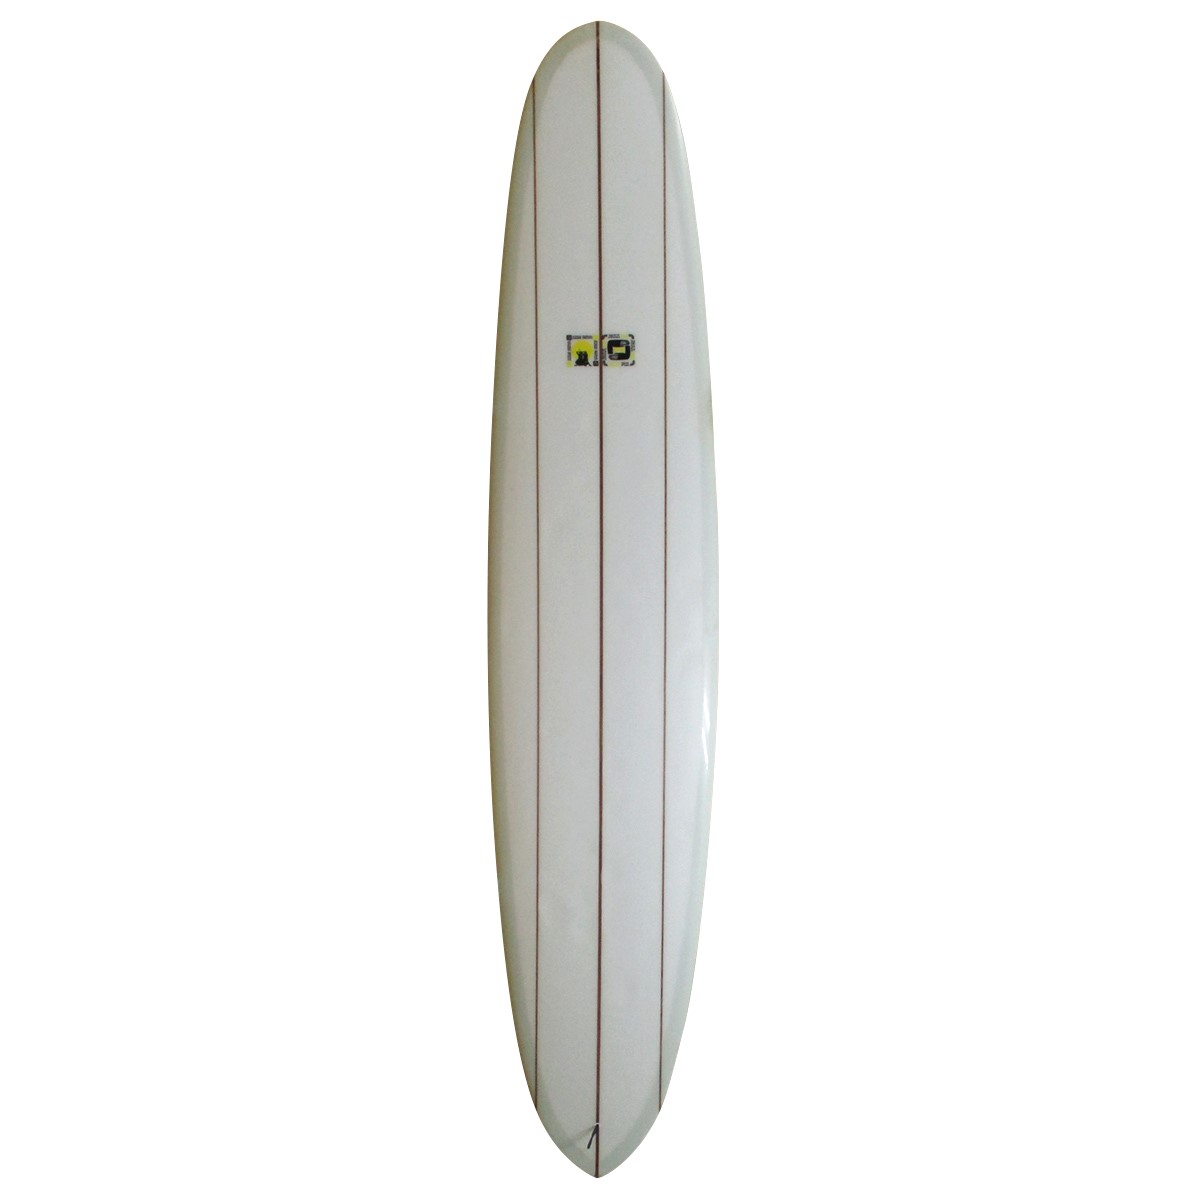 有名ブランド RAGE surfboards 5'7 flowmasterフィン・リーシュ付 